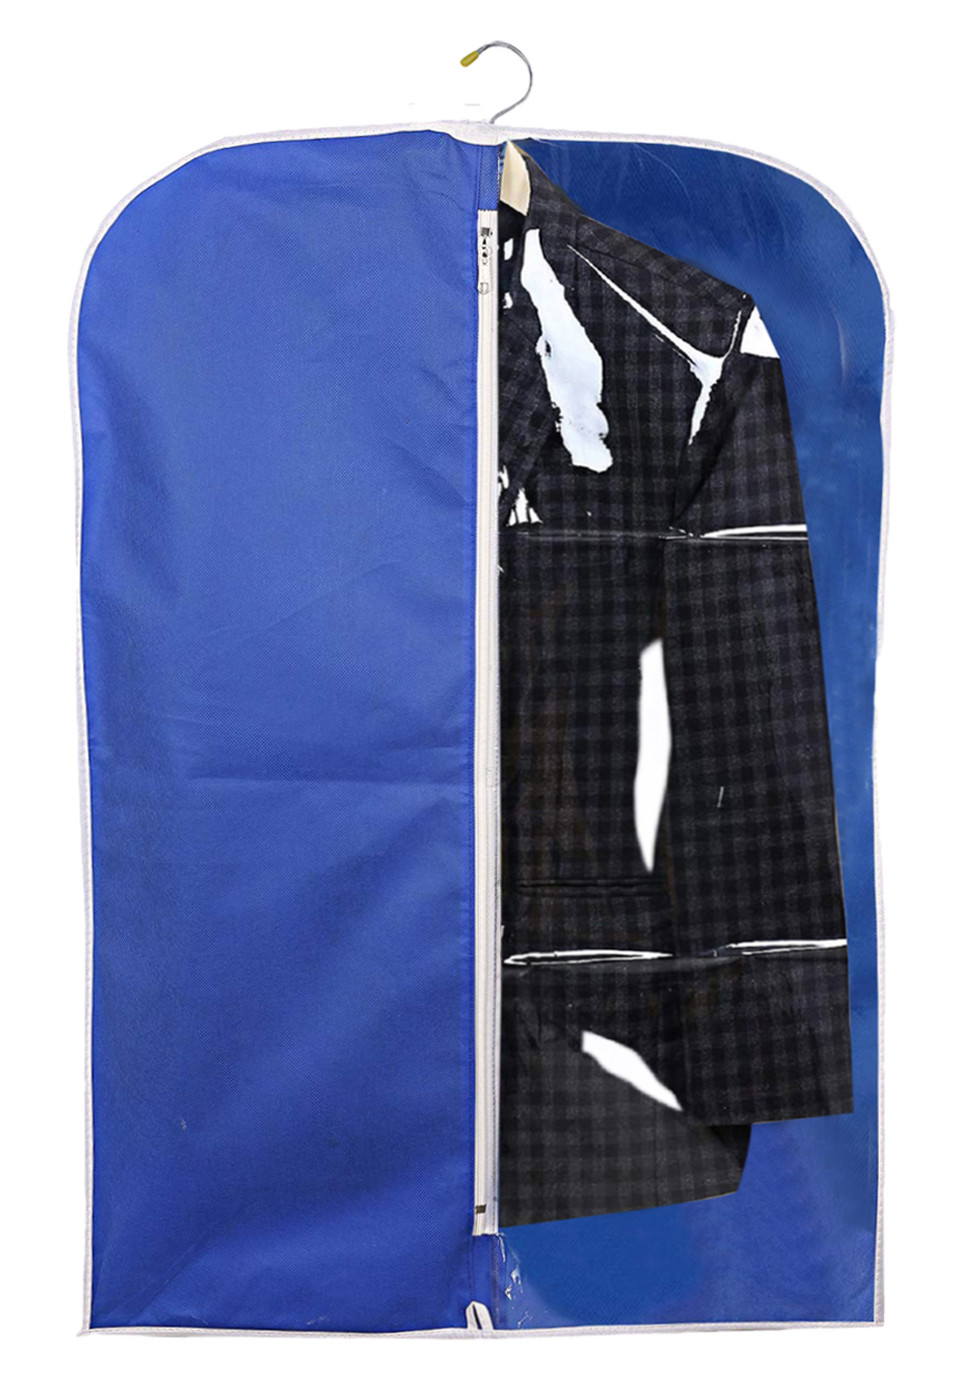 Kuber Industries Half Transparent Non Woven Men's Coat Blazer Suit Cover (Royal Blue)  -CTKTC41445